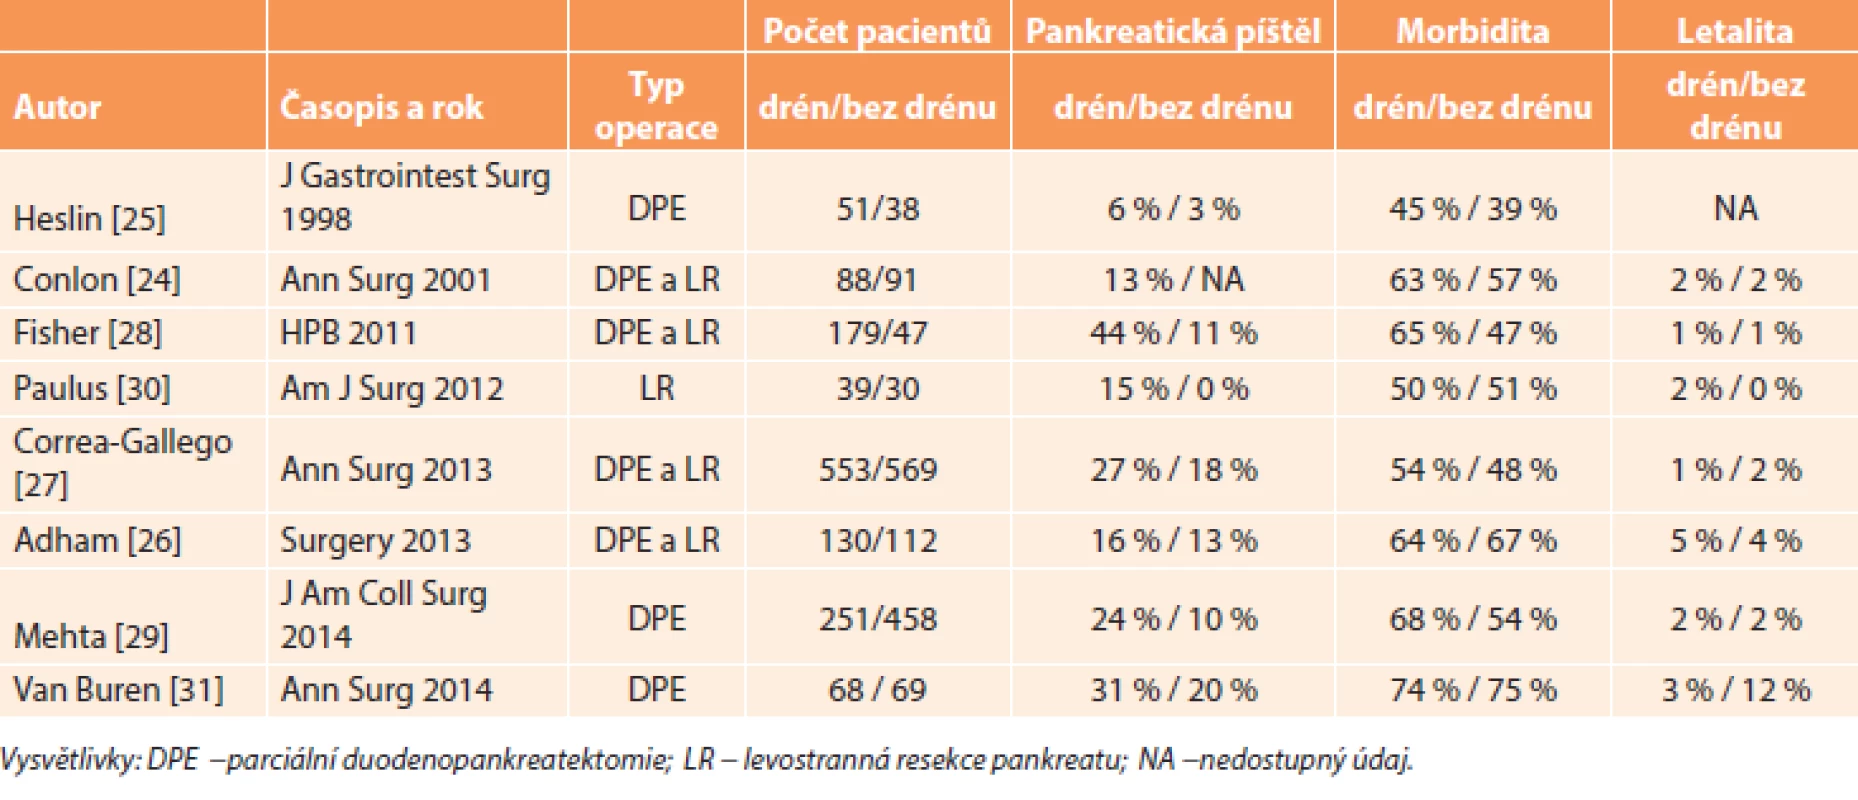 Výsledky studií porovnávající resekci pankreatu s drénem a bez drénu 
Tab. 1: Results of studies comparing pancreatic resection with and without drain